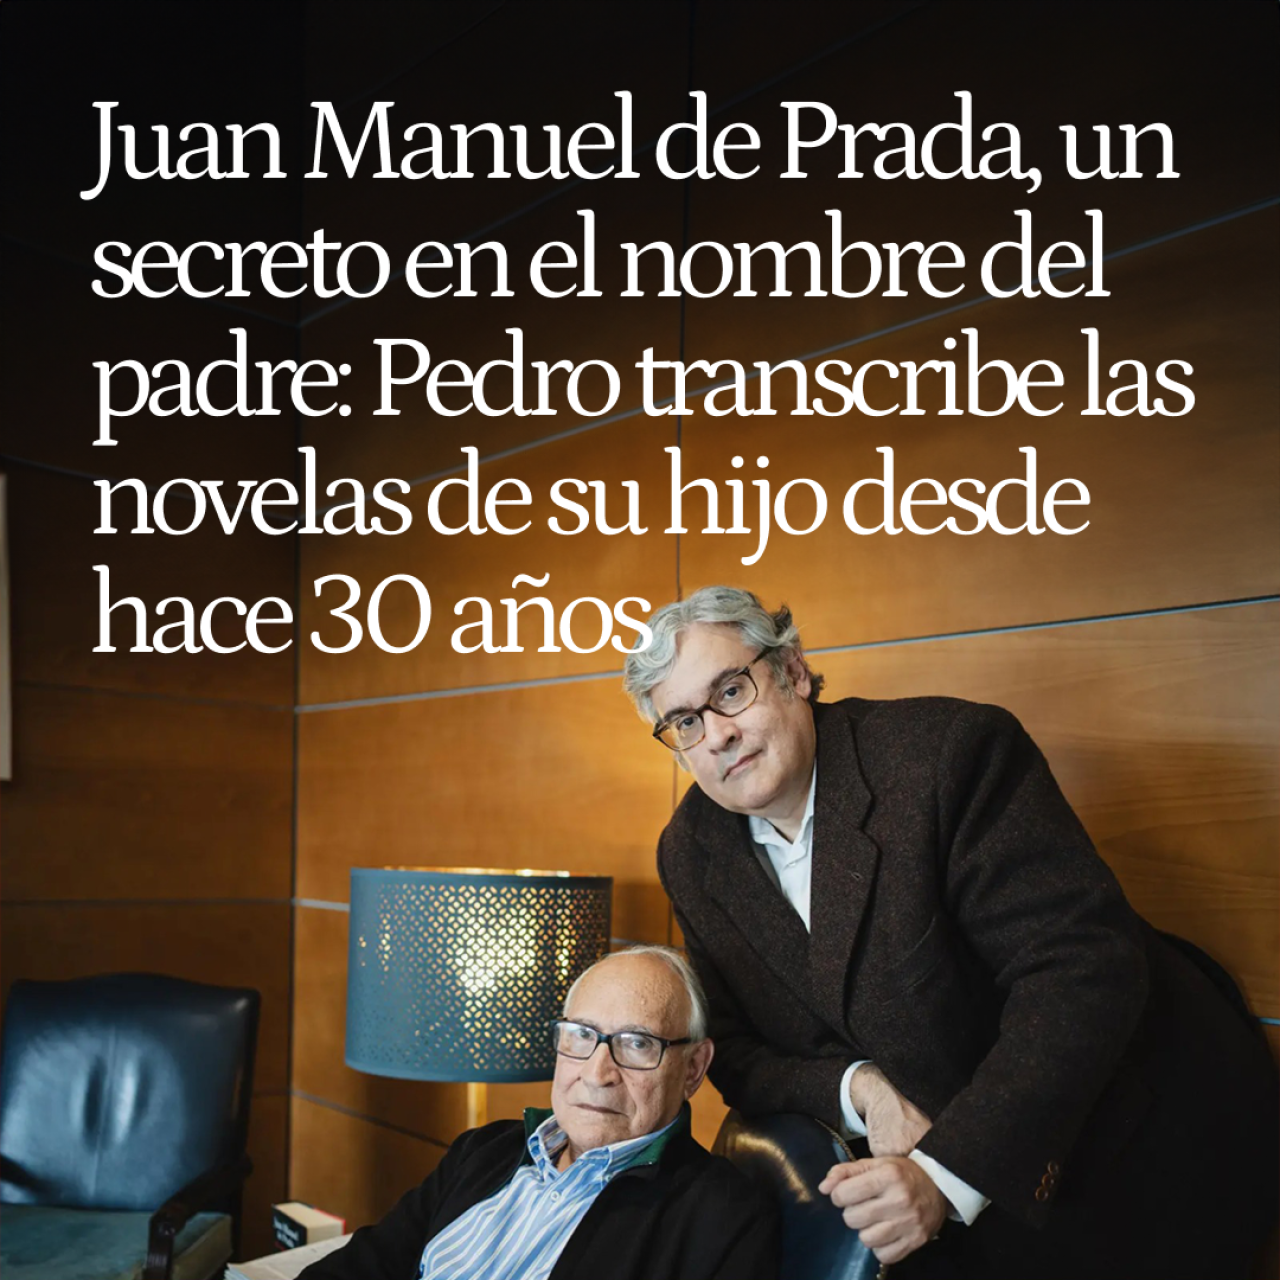 Juan Manuel de Prada, un secreto en el nombre del padre: Pedro transcribe las novelas de su hijo desde hace 30 años